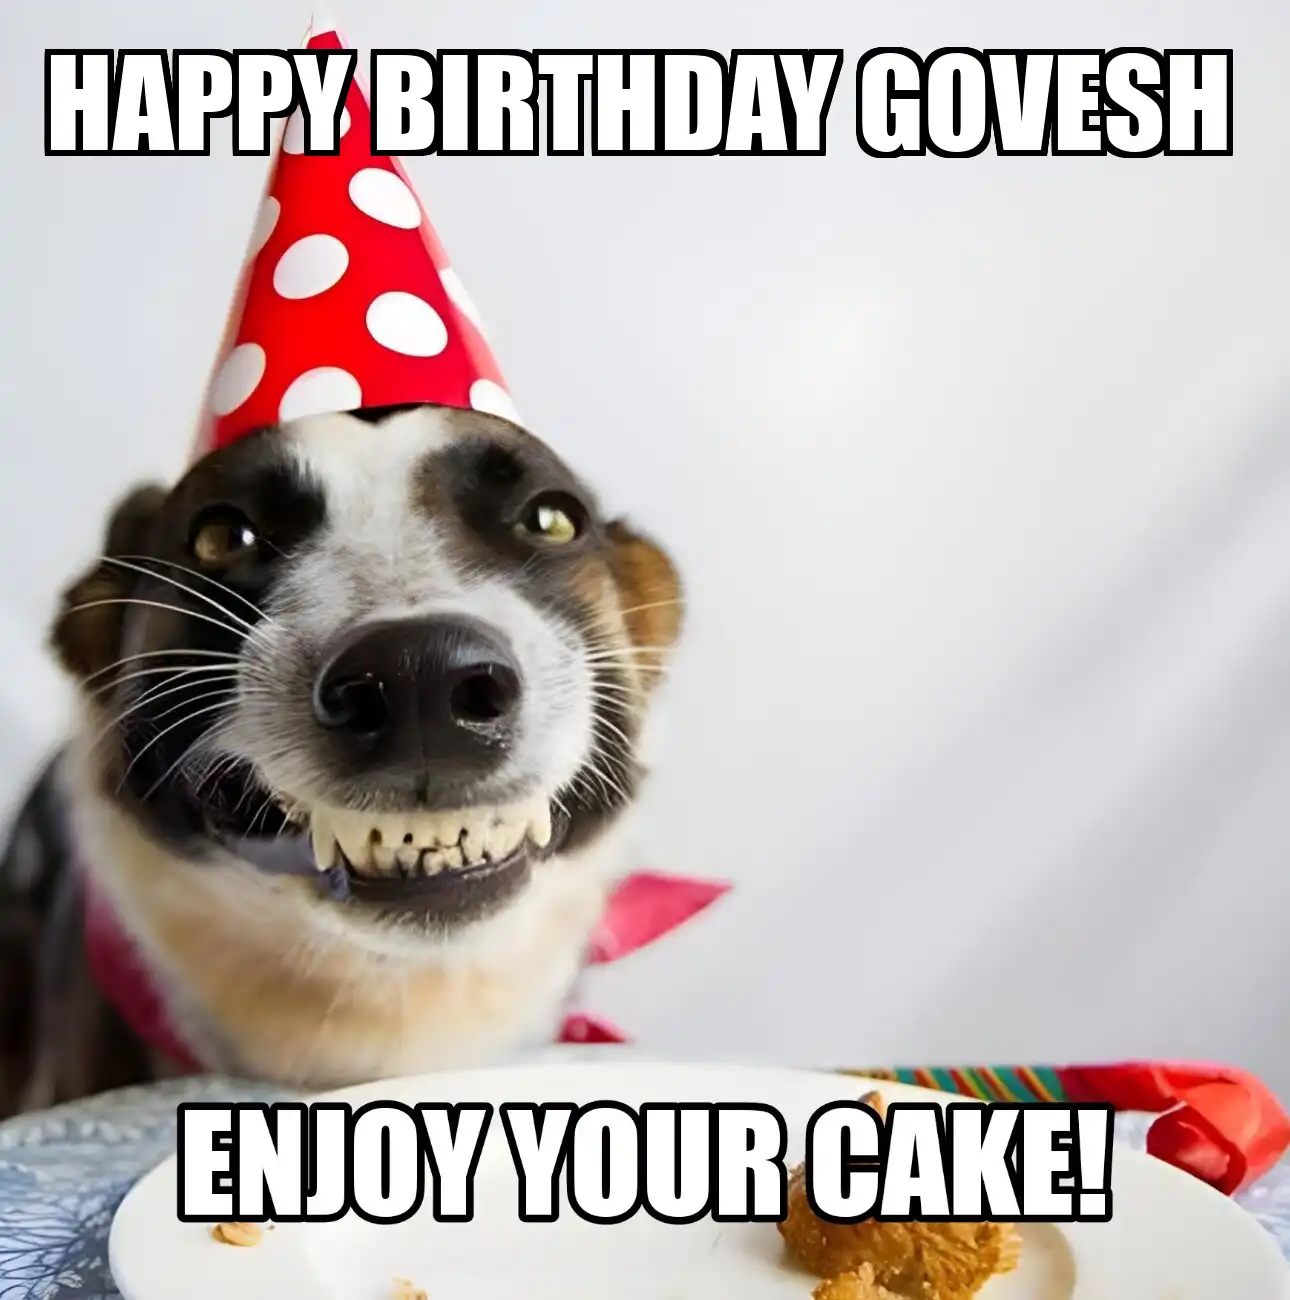 Happy Birthday Govesh Enjoy Your Cake Dog Meme